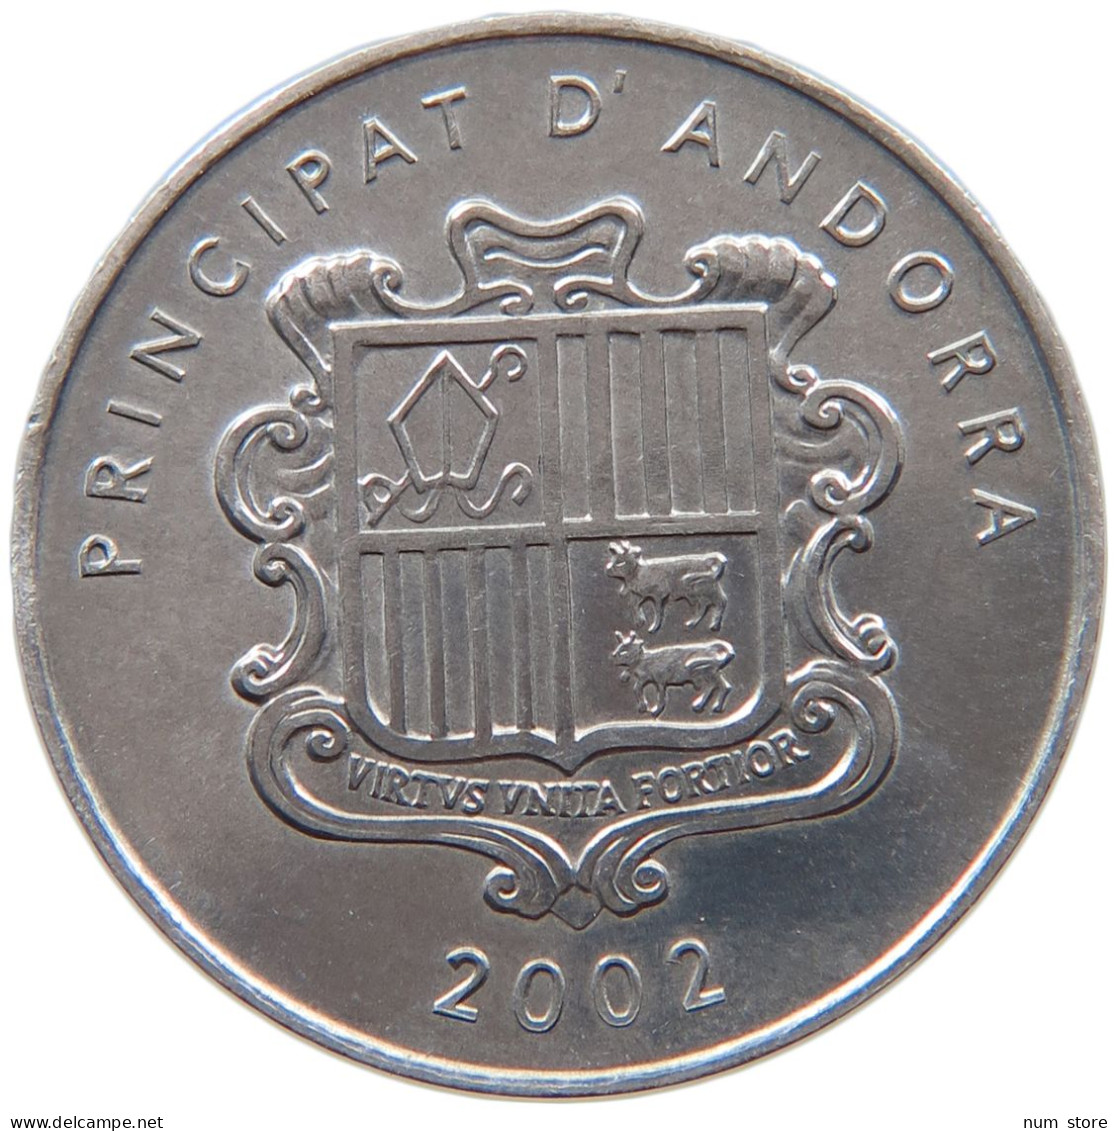 ANDORRA CENTIM 2002  #s027 0021 - Andorra